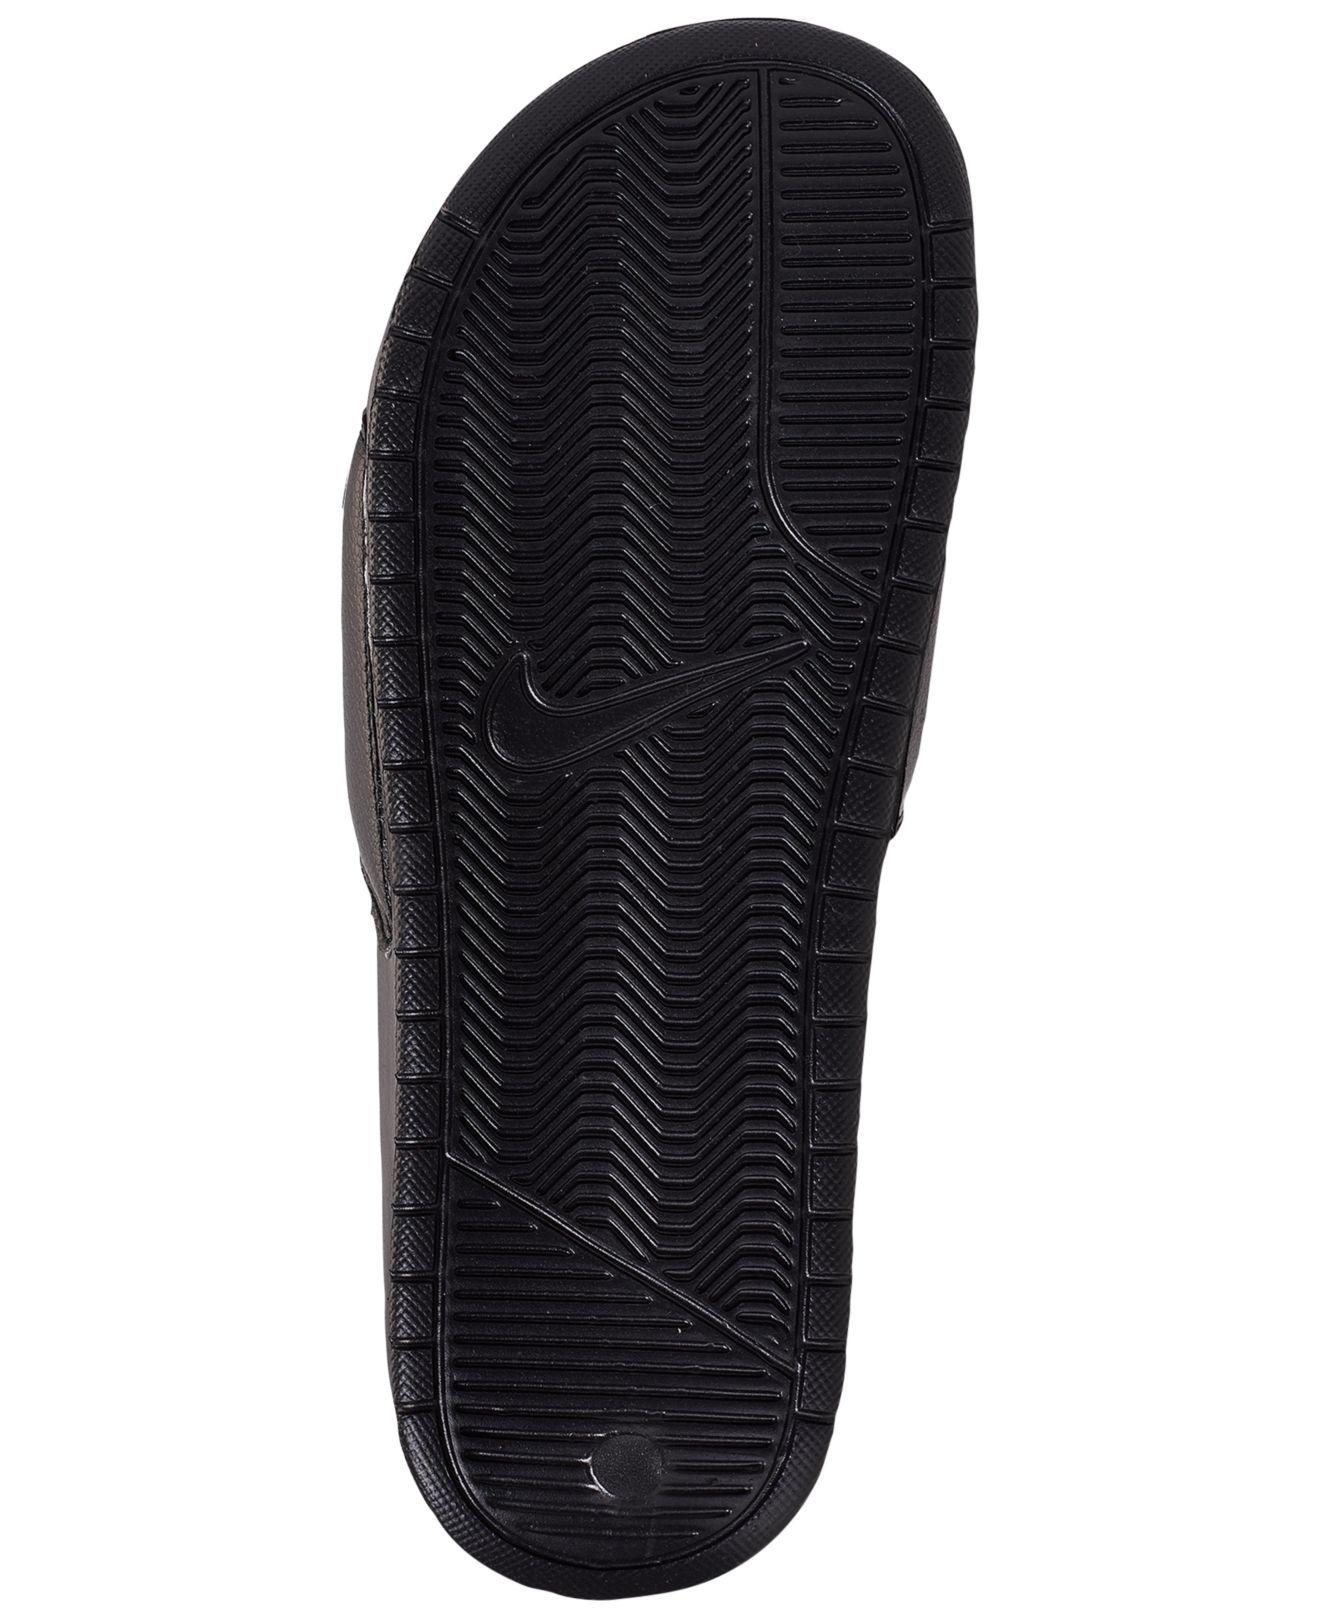 Nike Benassi Jdi Beach & Pool Slides in Black/White (Black) for Men - Lyst